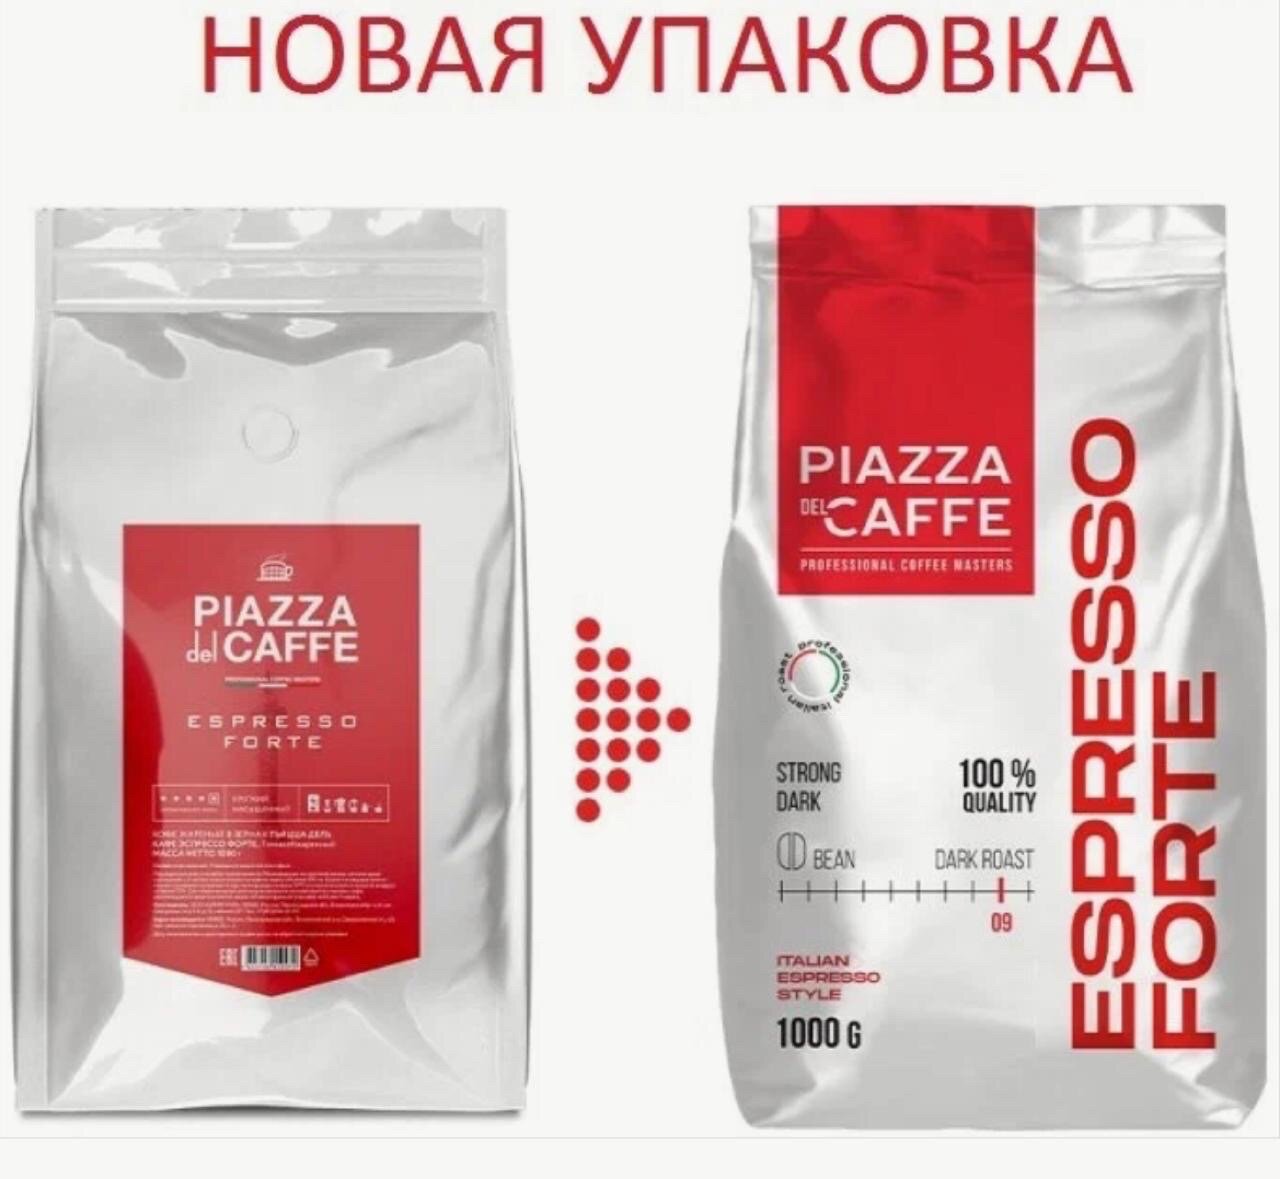 Кофе в зернах Piazza del Caffe Espresso Forte промышленная упаковка, 1 кг